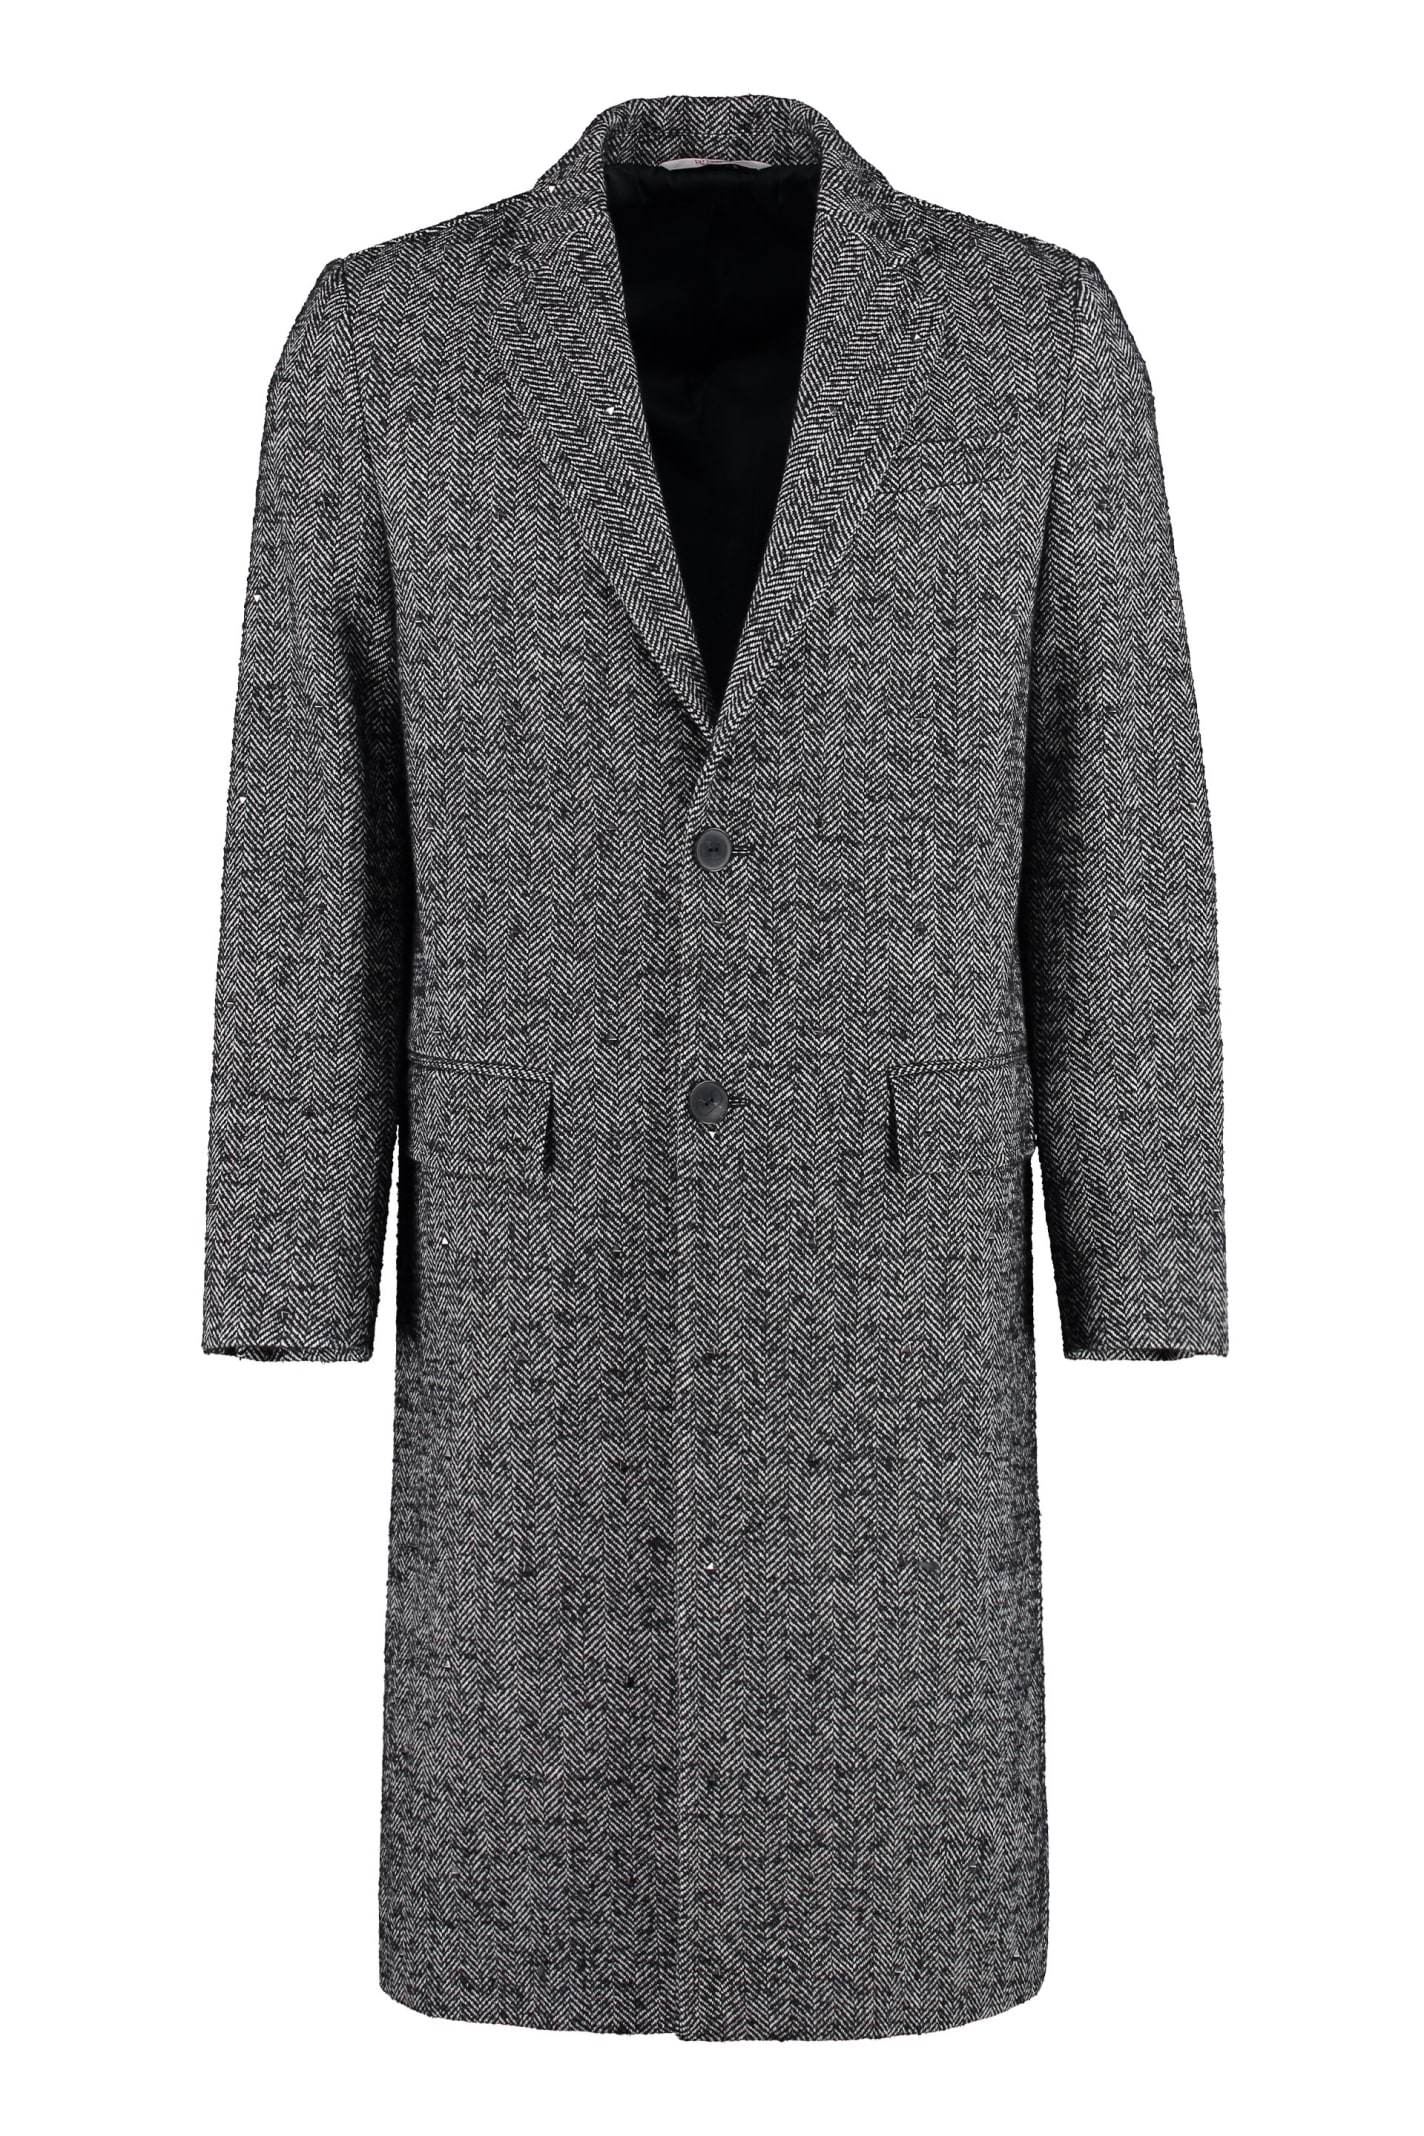 Valentino Mixed Wool Tweed Coat